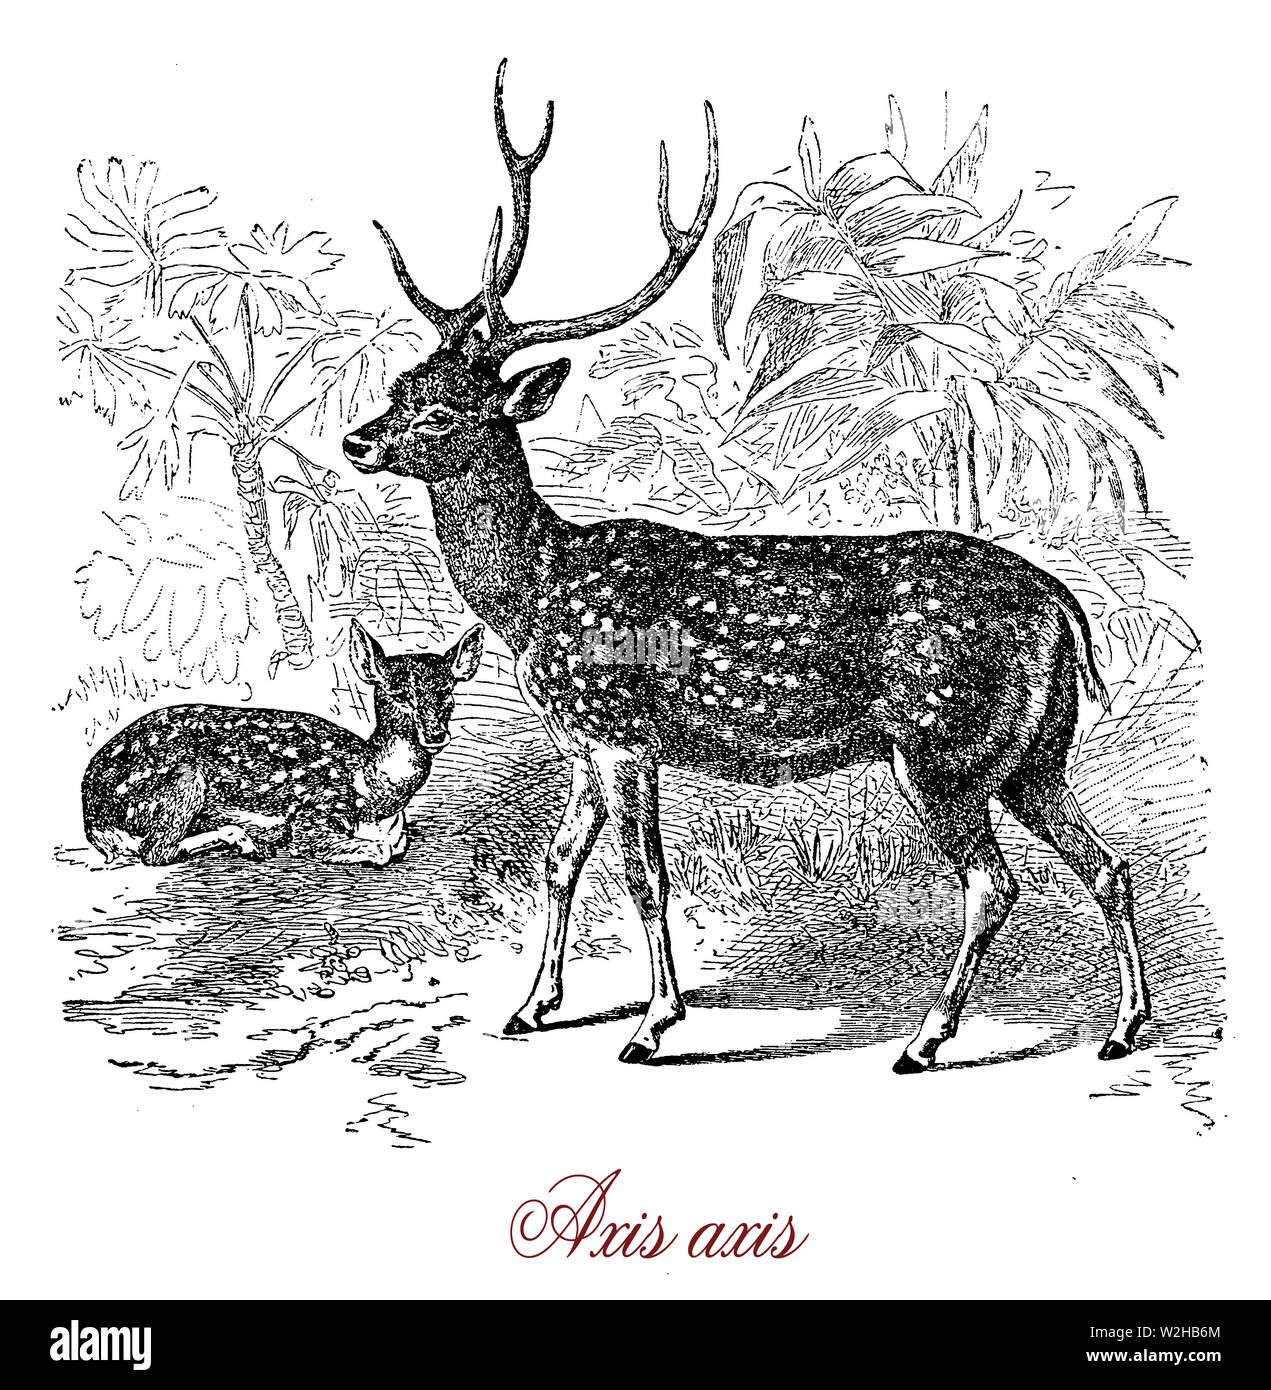 Chital ou axis est deer avec bois et la partie dorsale couverte par des points blancs originaire de l'Inde.c'est un animal grégaire et forme des troupeaux matriarcale dans les prairies de nourriture Banque D'Images